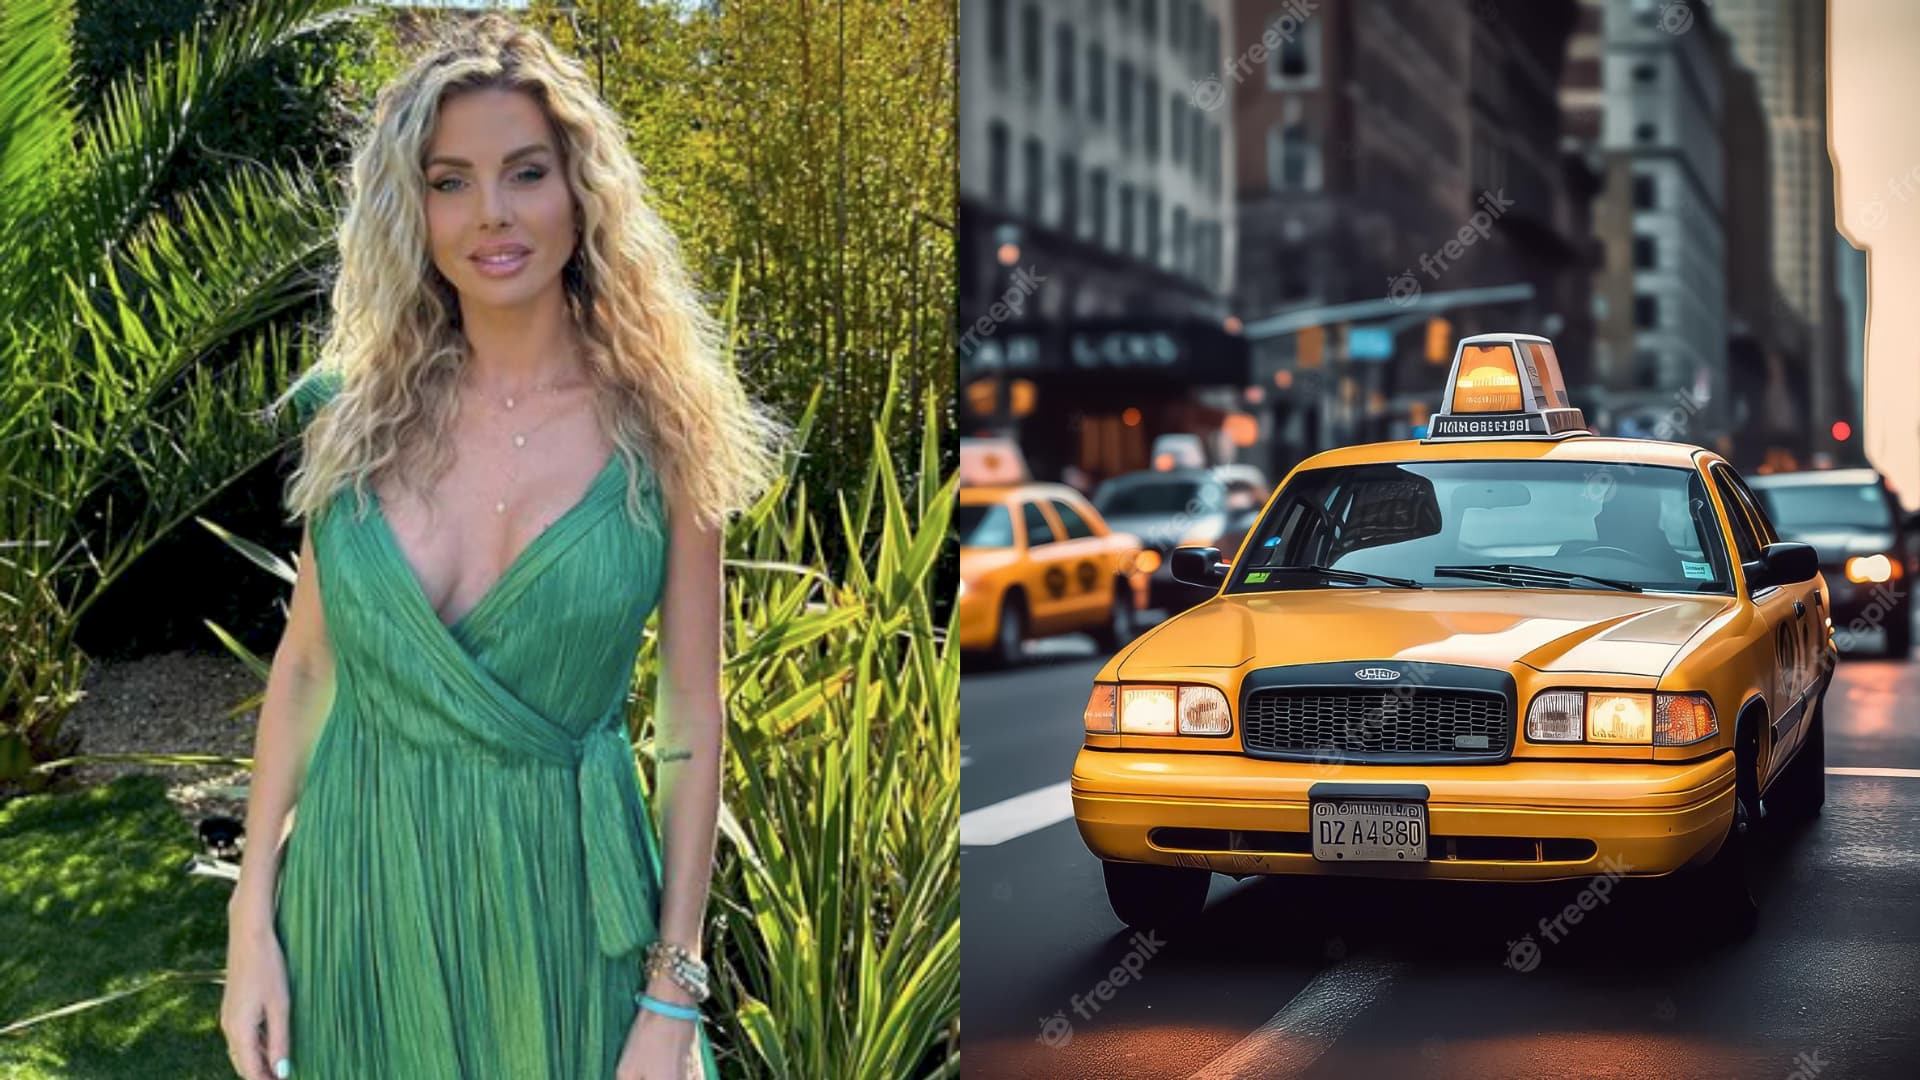 Jessica Thivenin : son chauffeur de taxi impoli, elle décide de le filmer